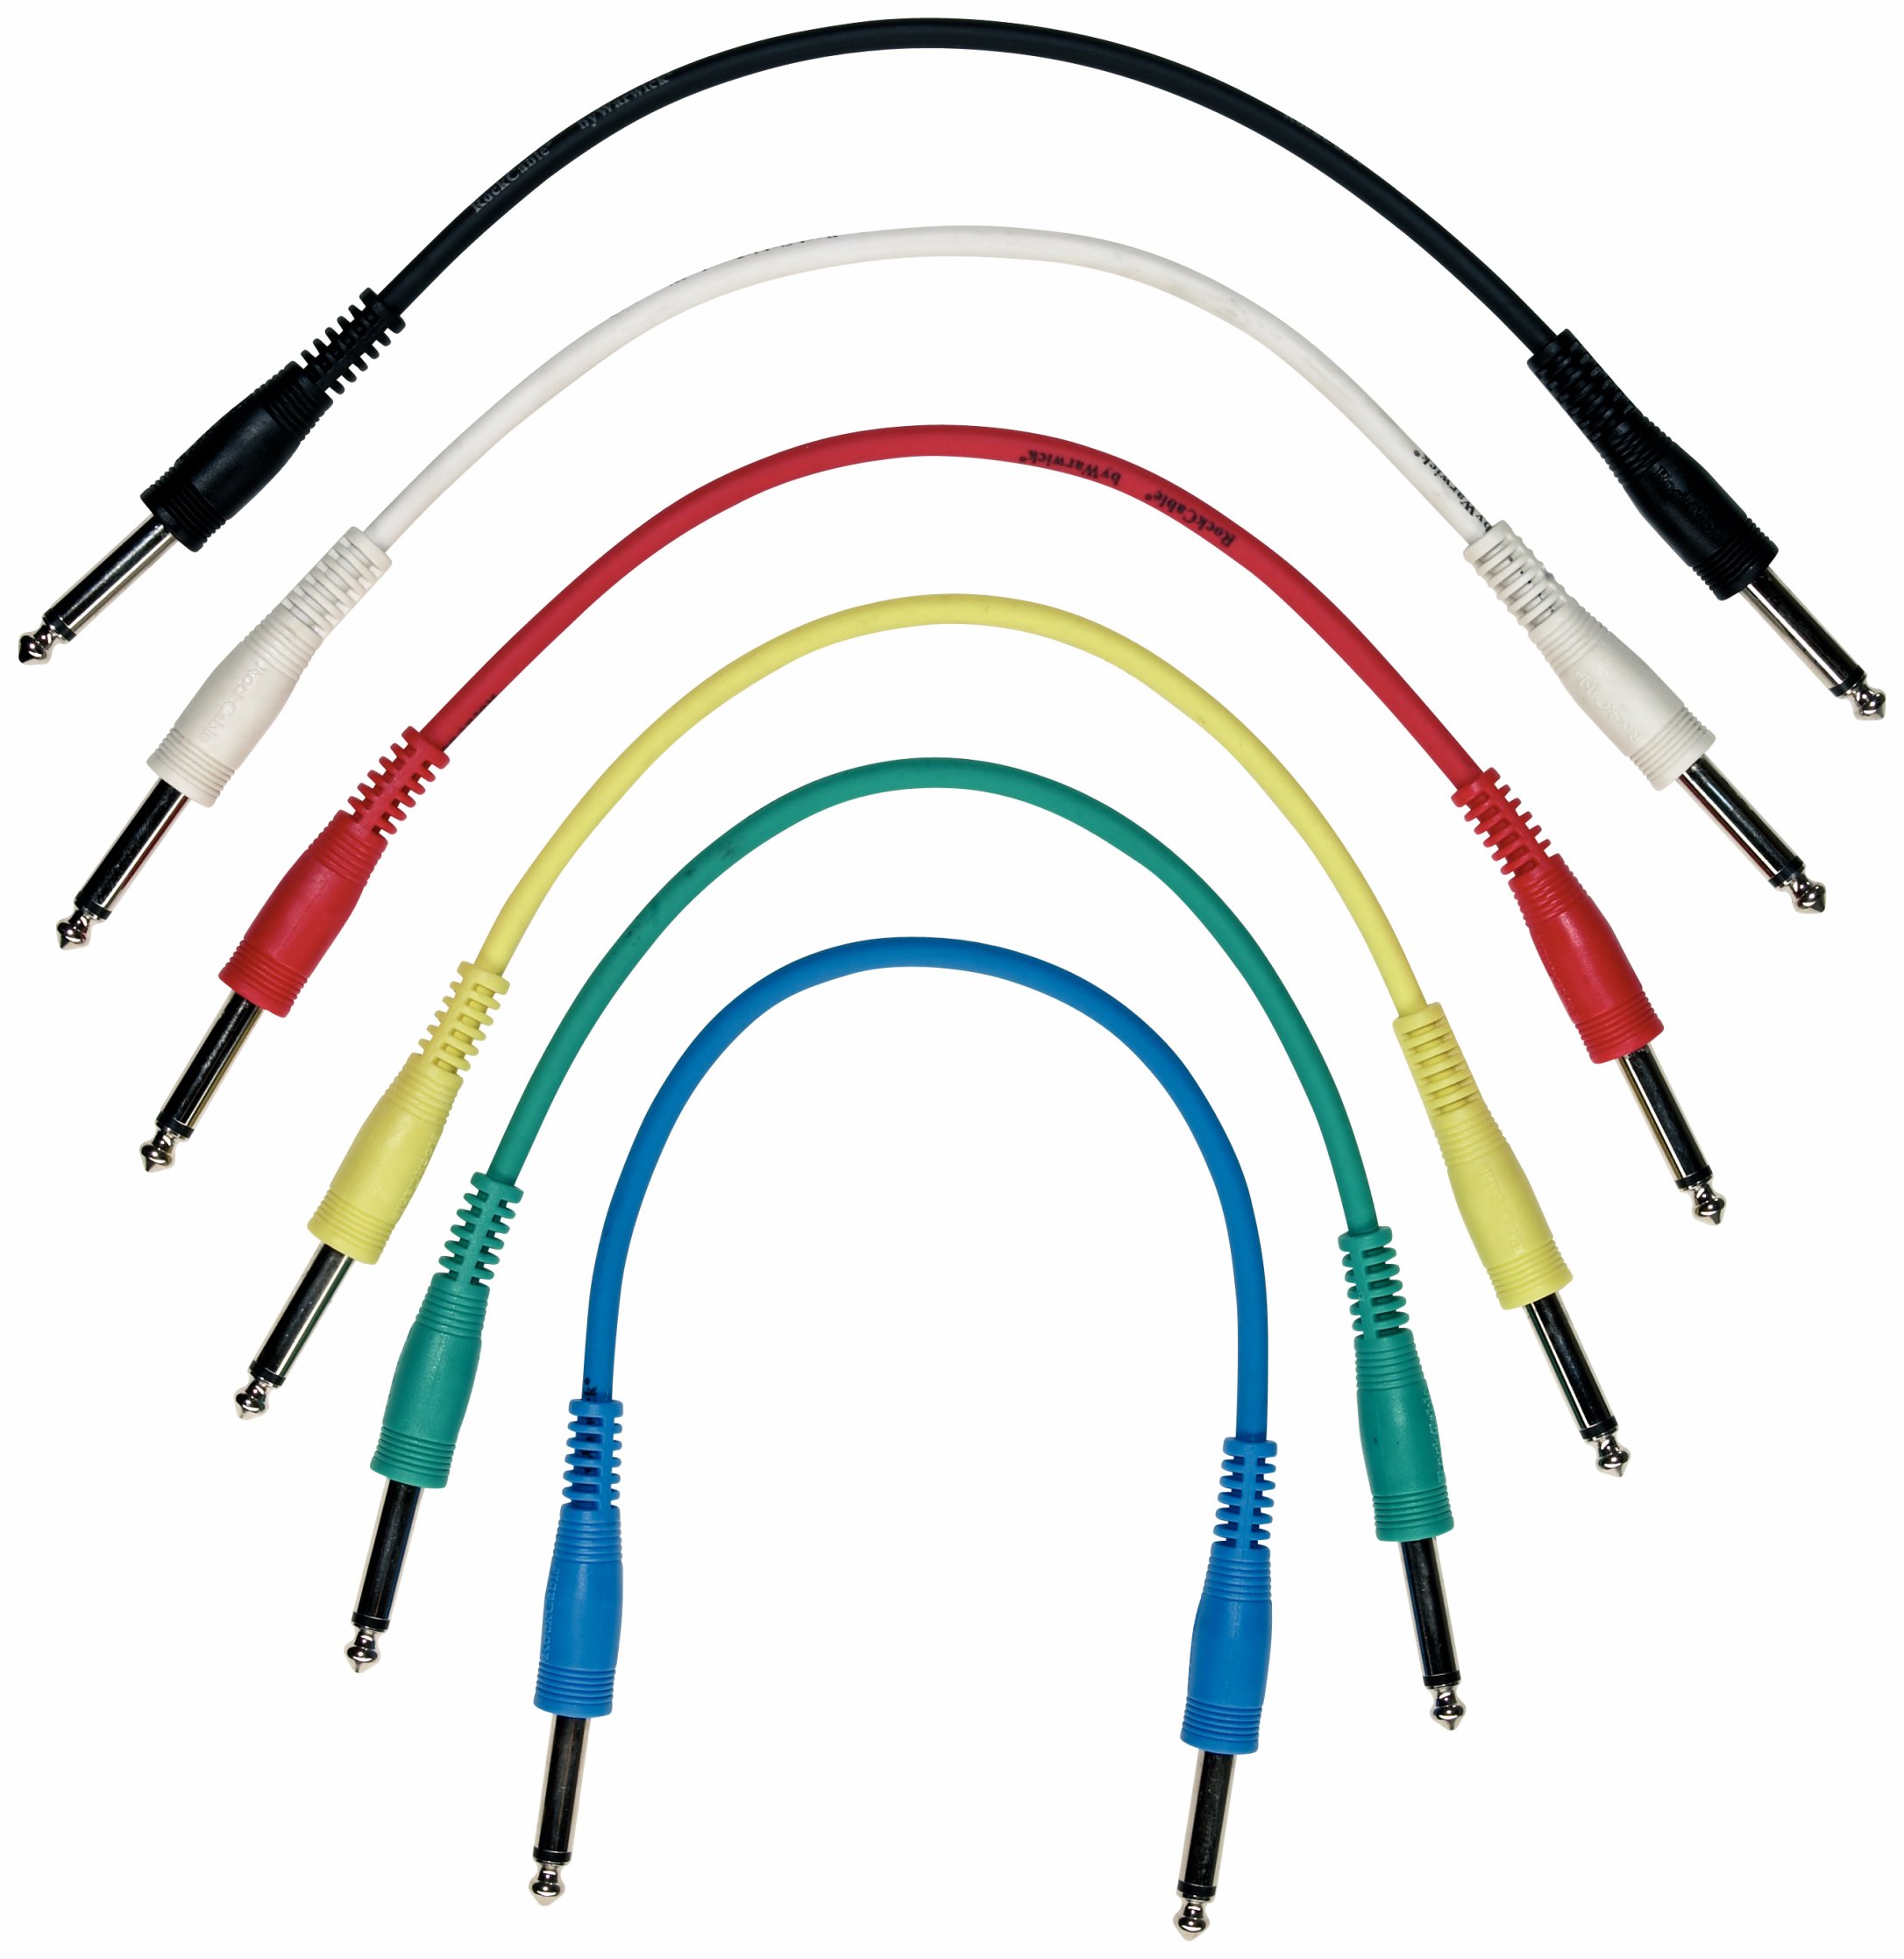 RockCable Patch Cable Set - straight TS (6.3 mm / 1/4"), multi-color, 6 pcs. - 30 cm / 11 13/16"